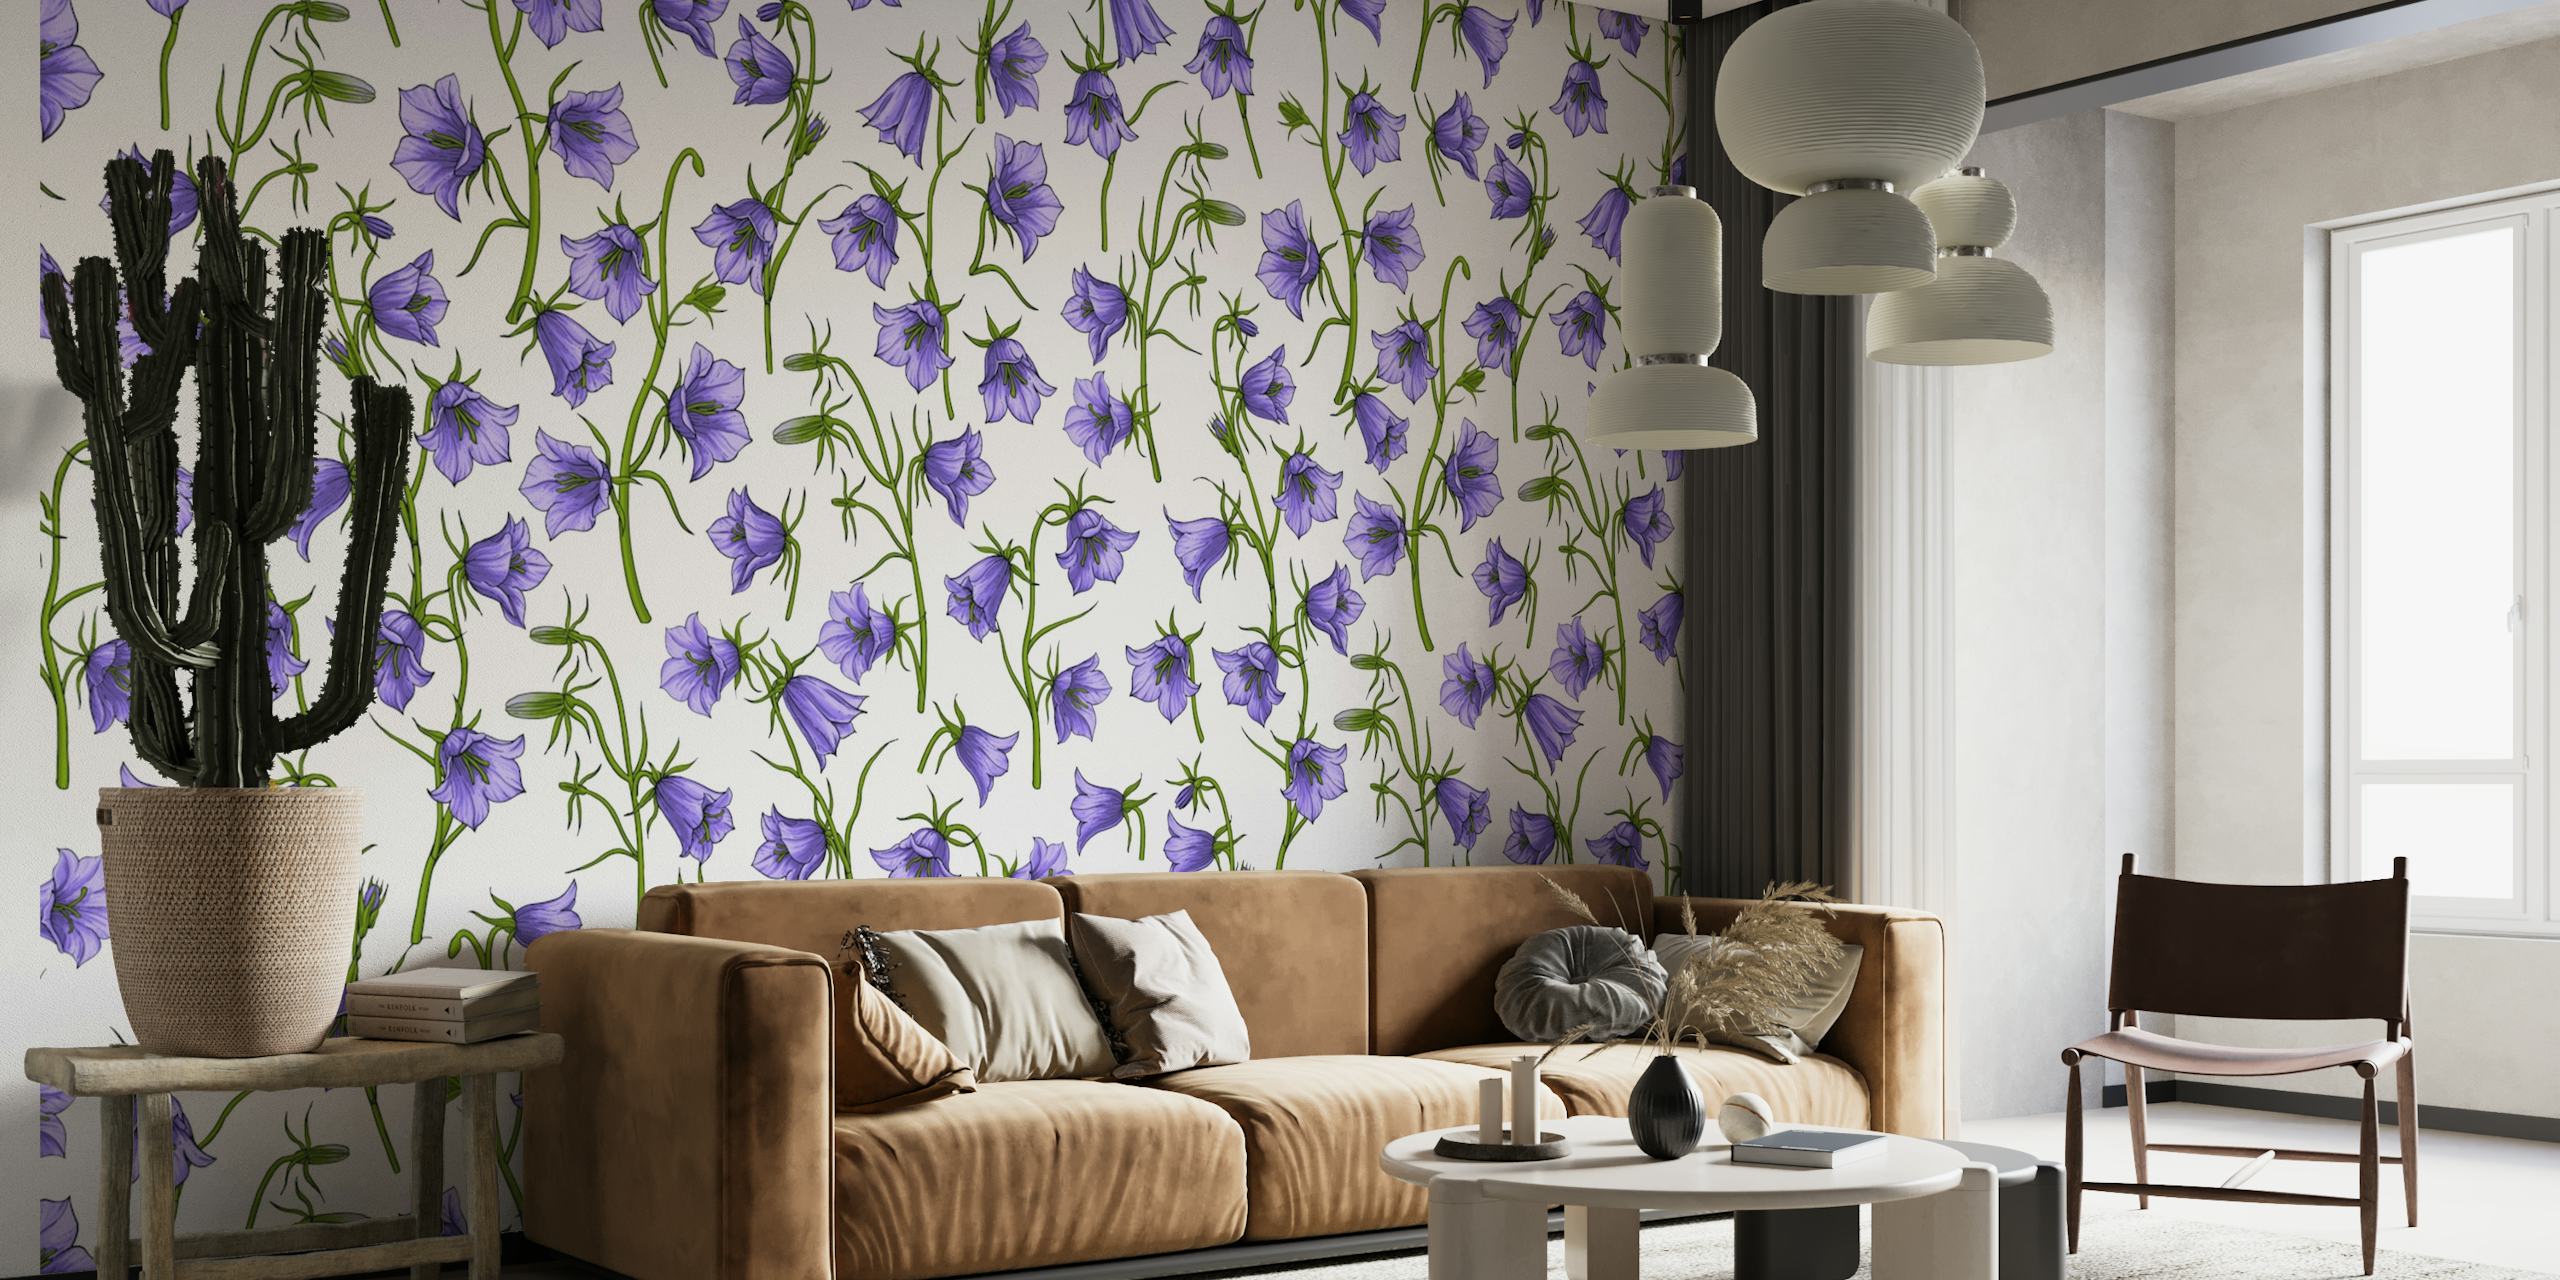 Fototapete „Glockenblumen in Violett“ mit einem sich wiederholenden Muster aus violetten glockenförmigen Blüten auf weißem Hintergrund